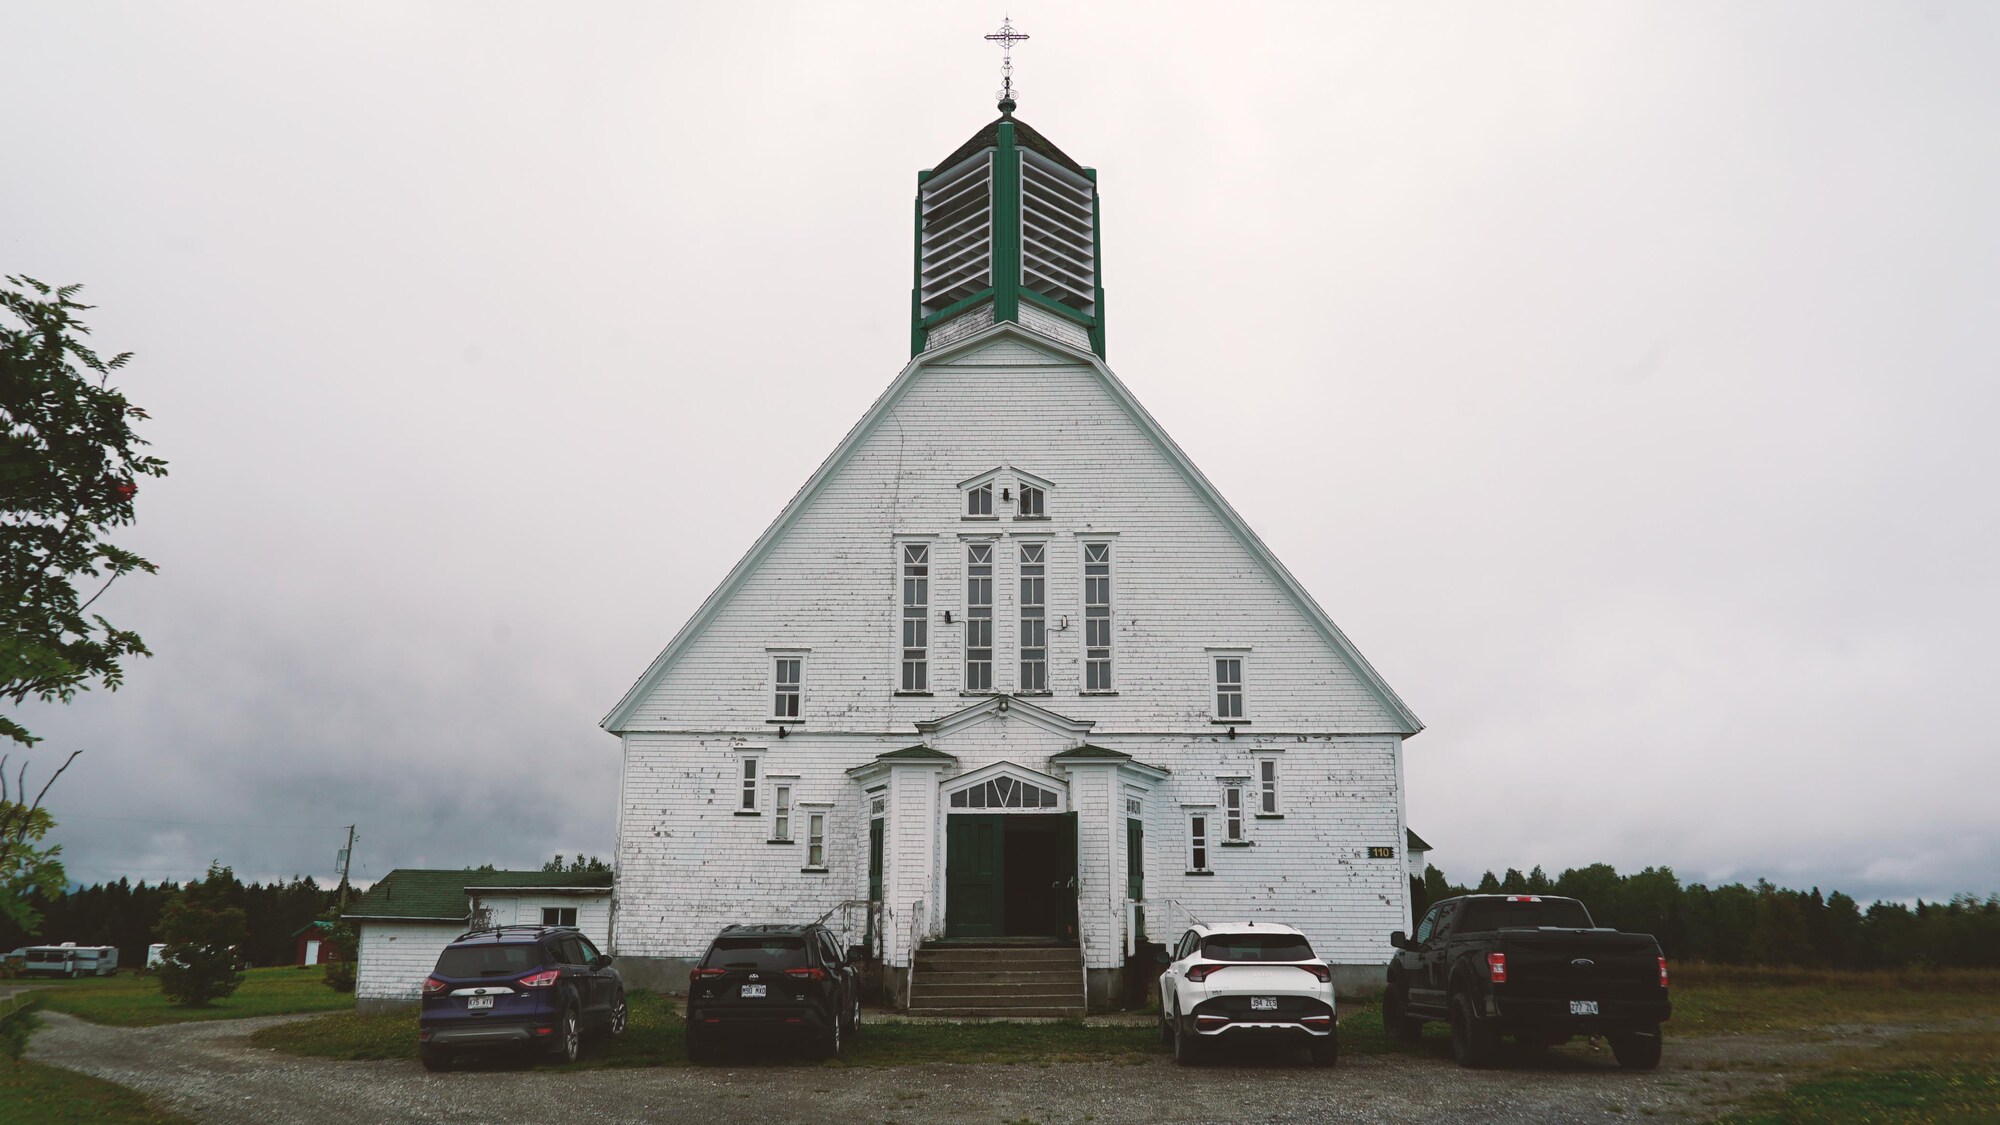 La façade d'une église.